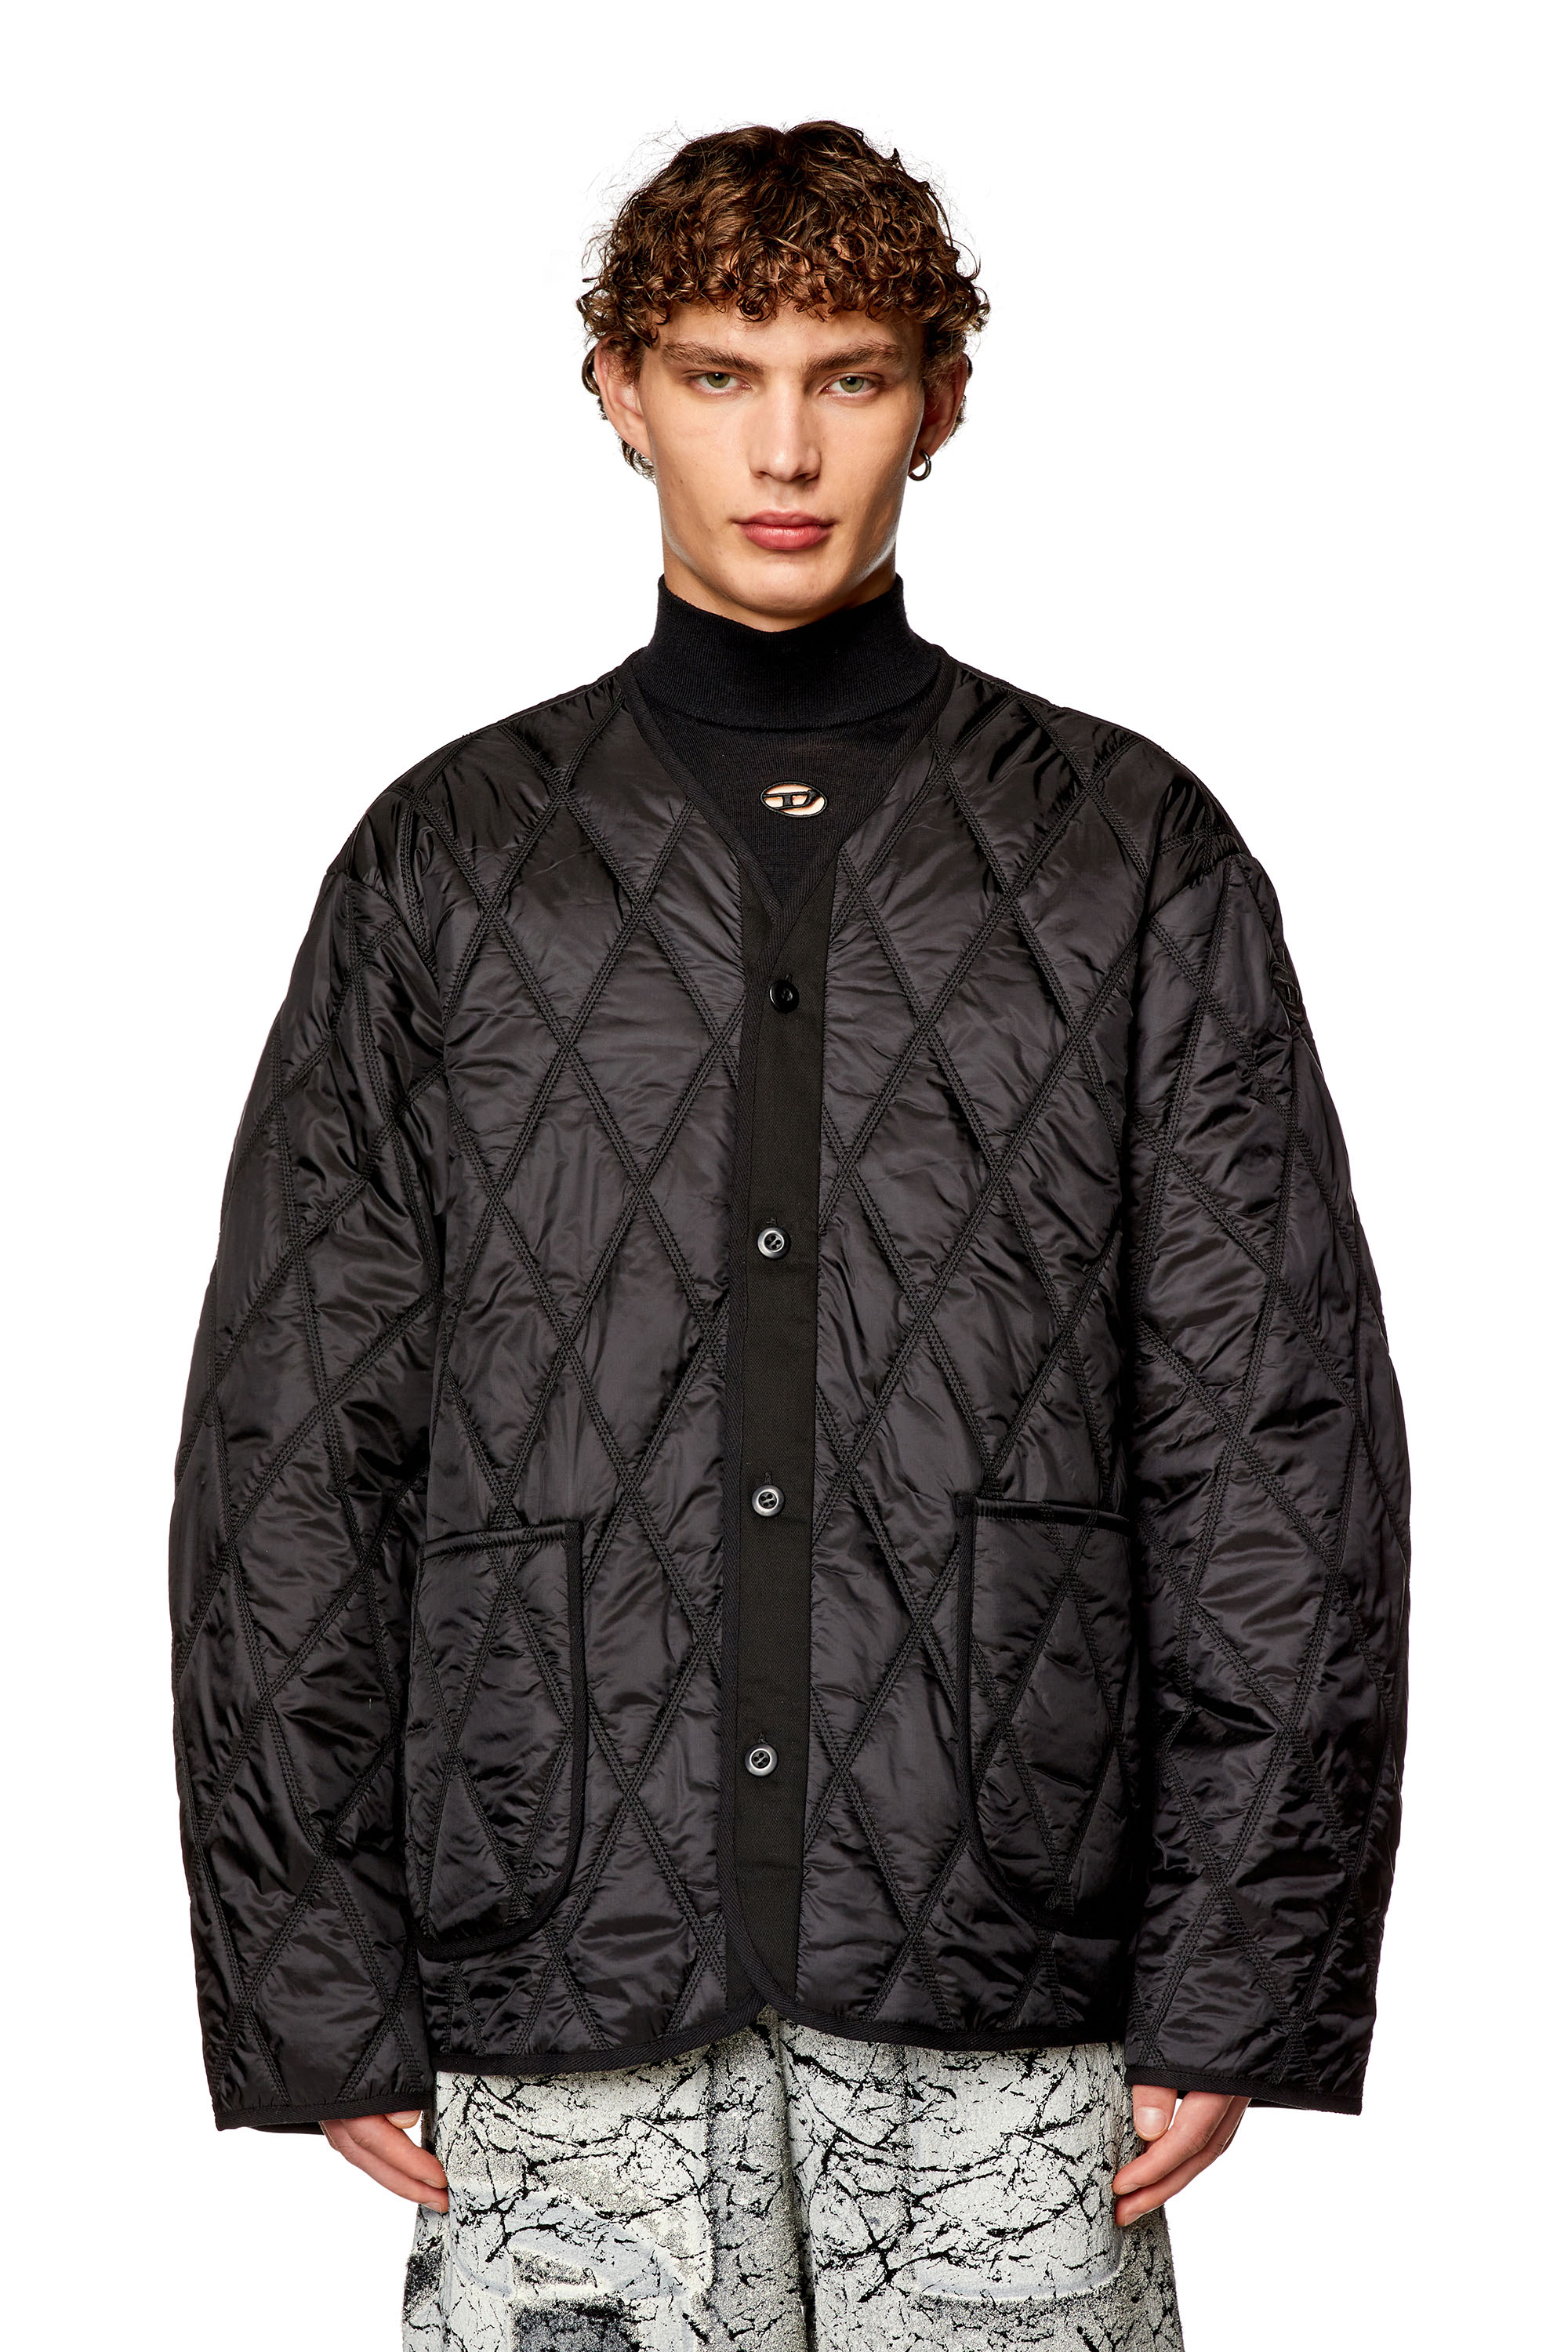 Diesel - J-BOY, Man V-neck jacket in quilted nylon in Black - Image 6